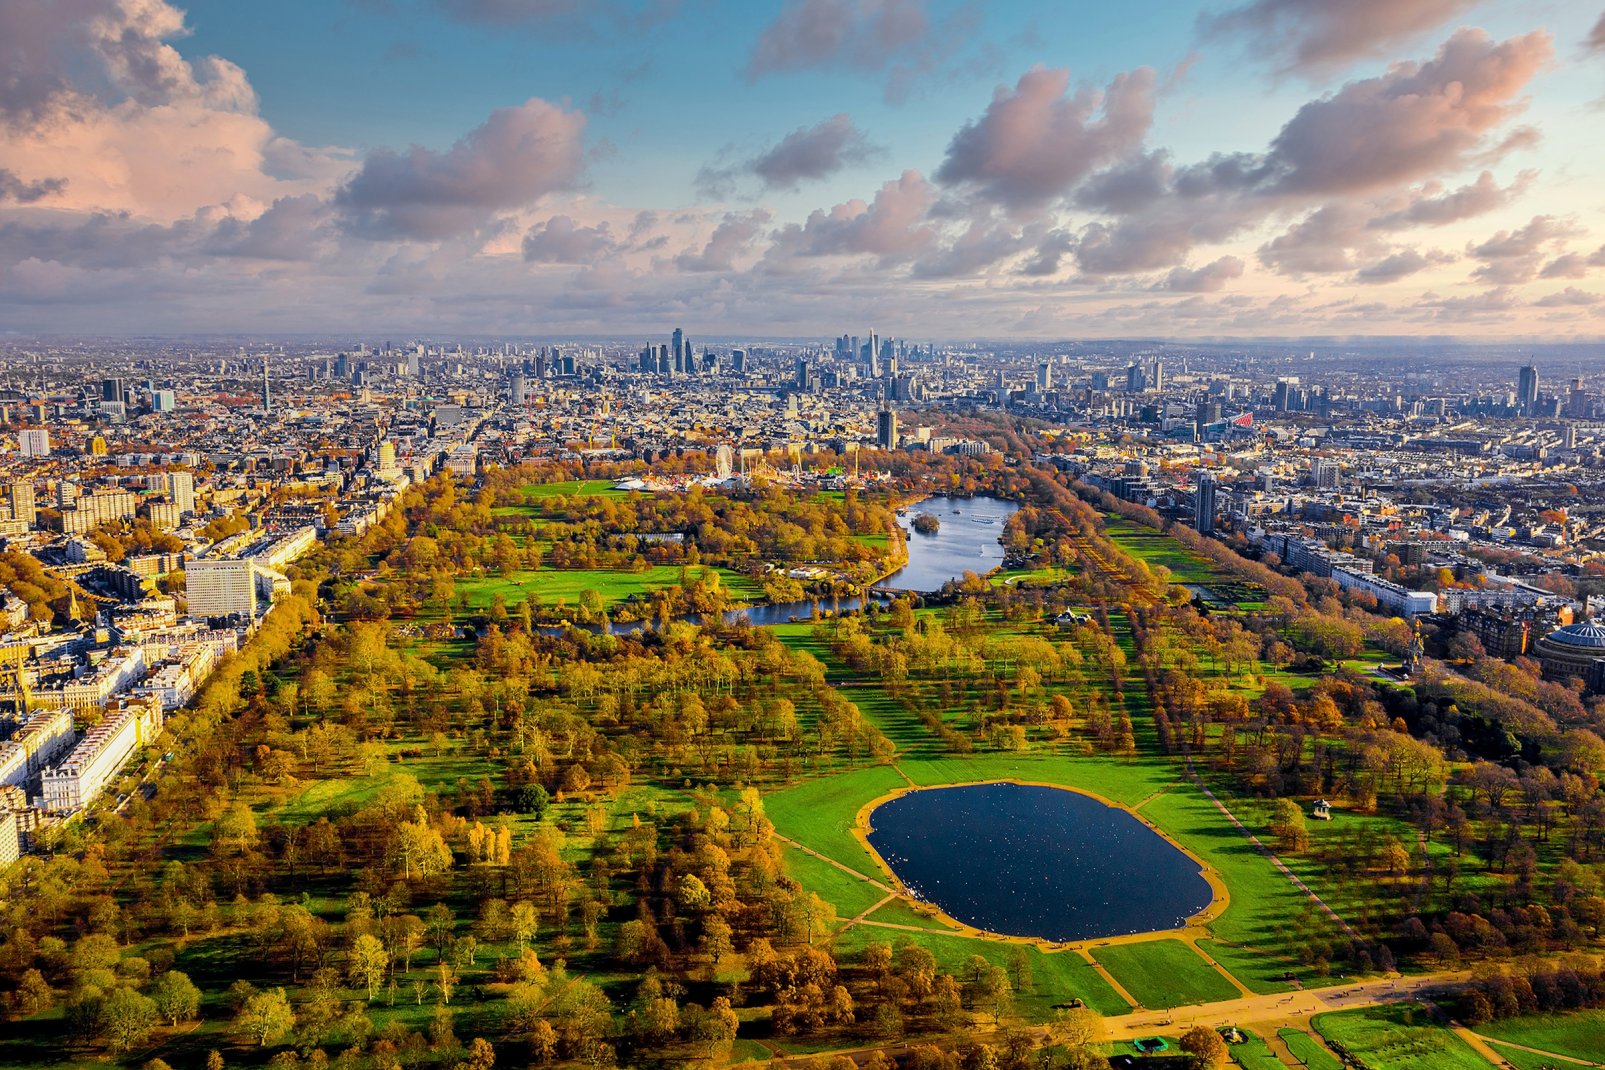 Plus grand parc de Londres, les 140 hectares de Hyde Park en sont en quelque sorte le poumon. Kensington Gardens est dans son prolongement, séparé par la rivière Serpentine.